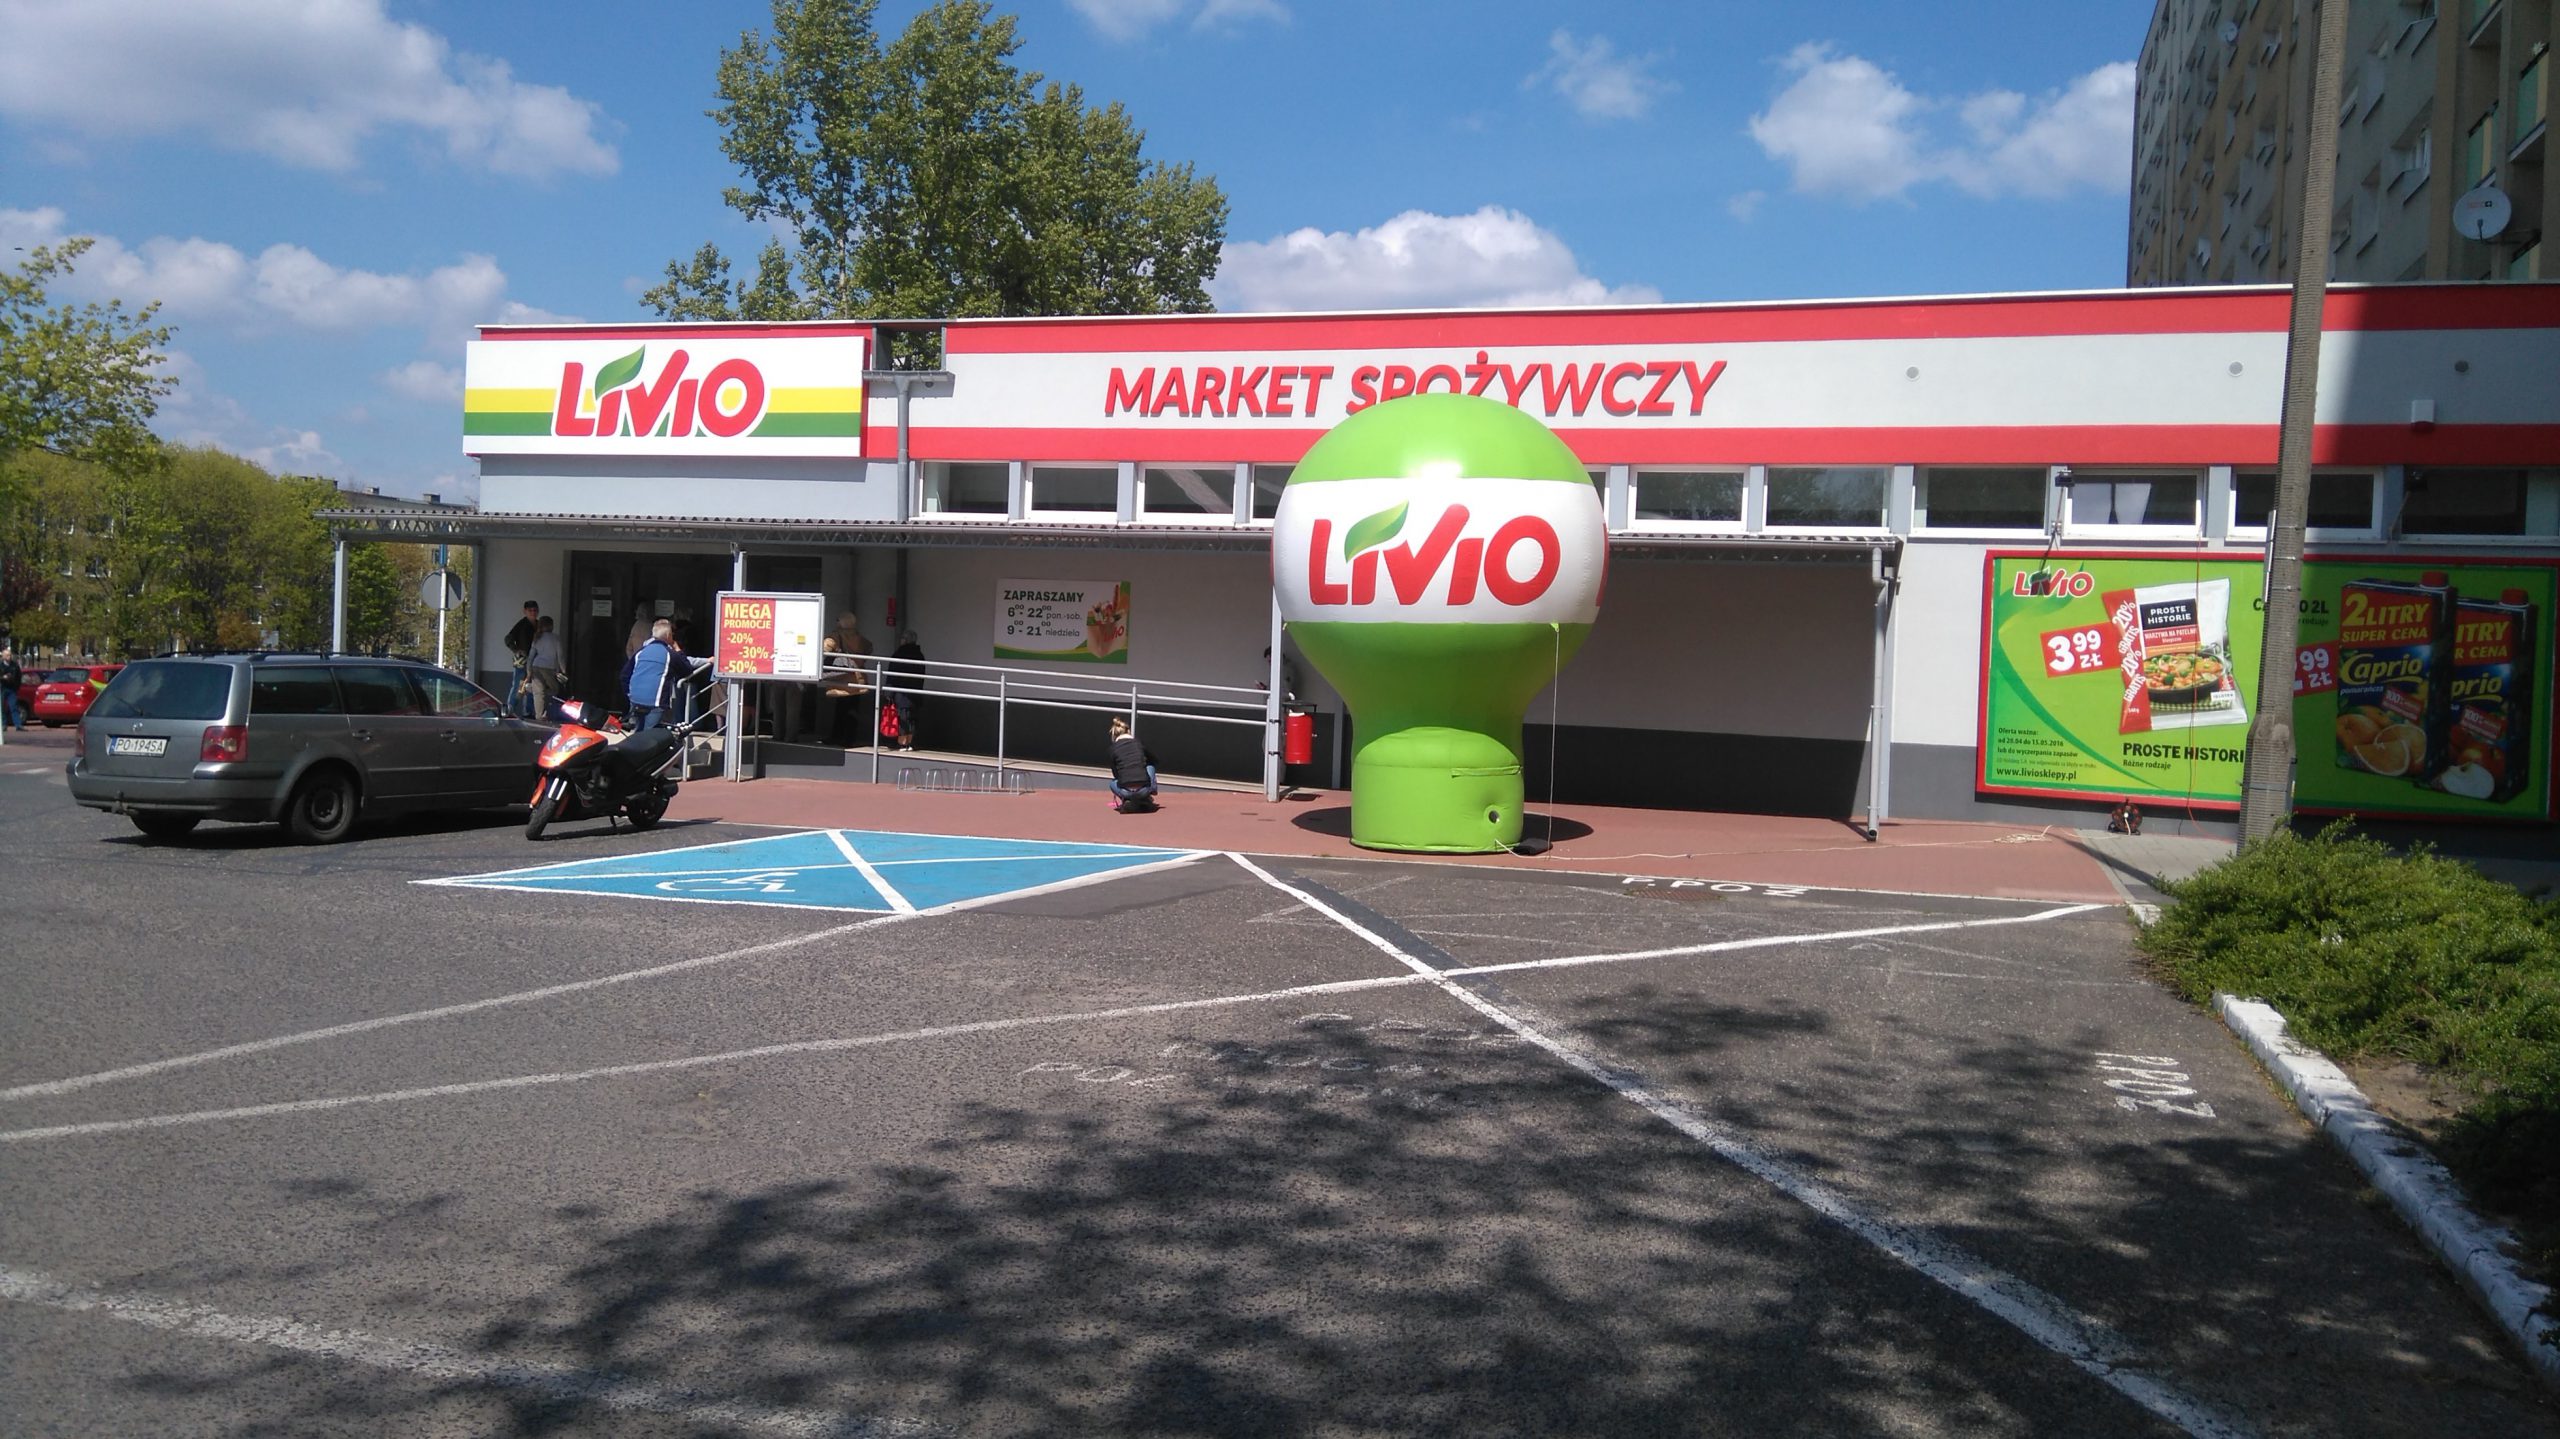 Nowy sklep sieci Livio w Poznaniu